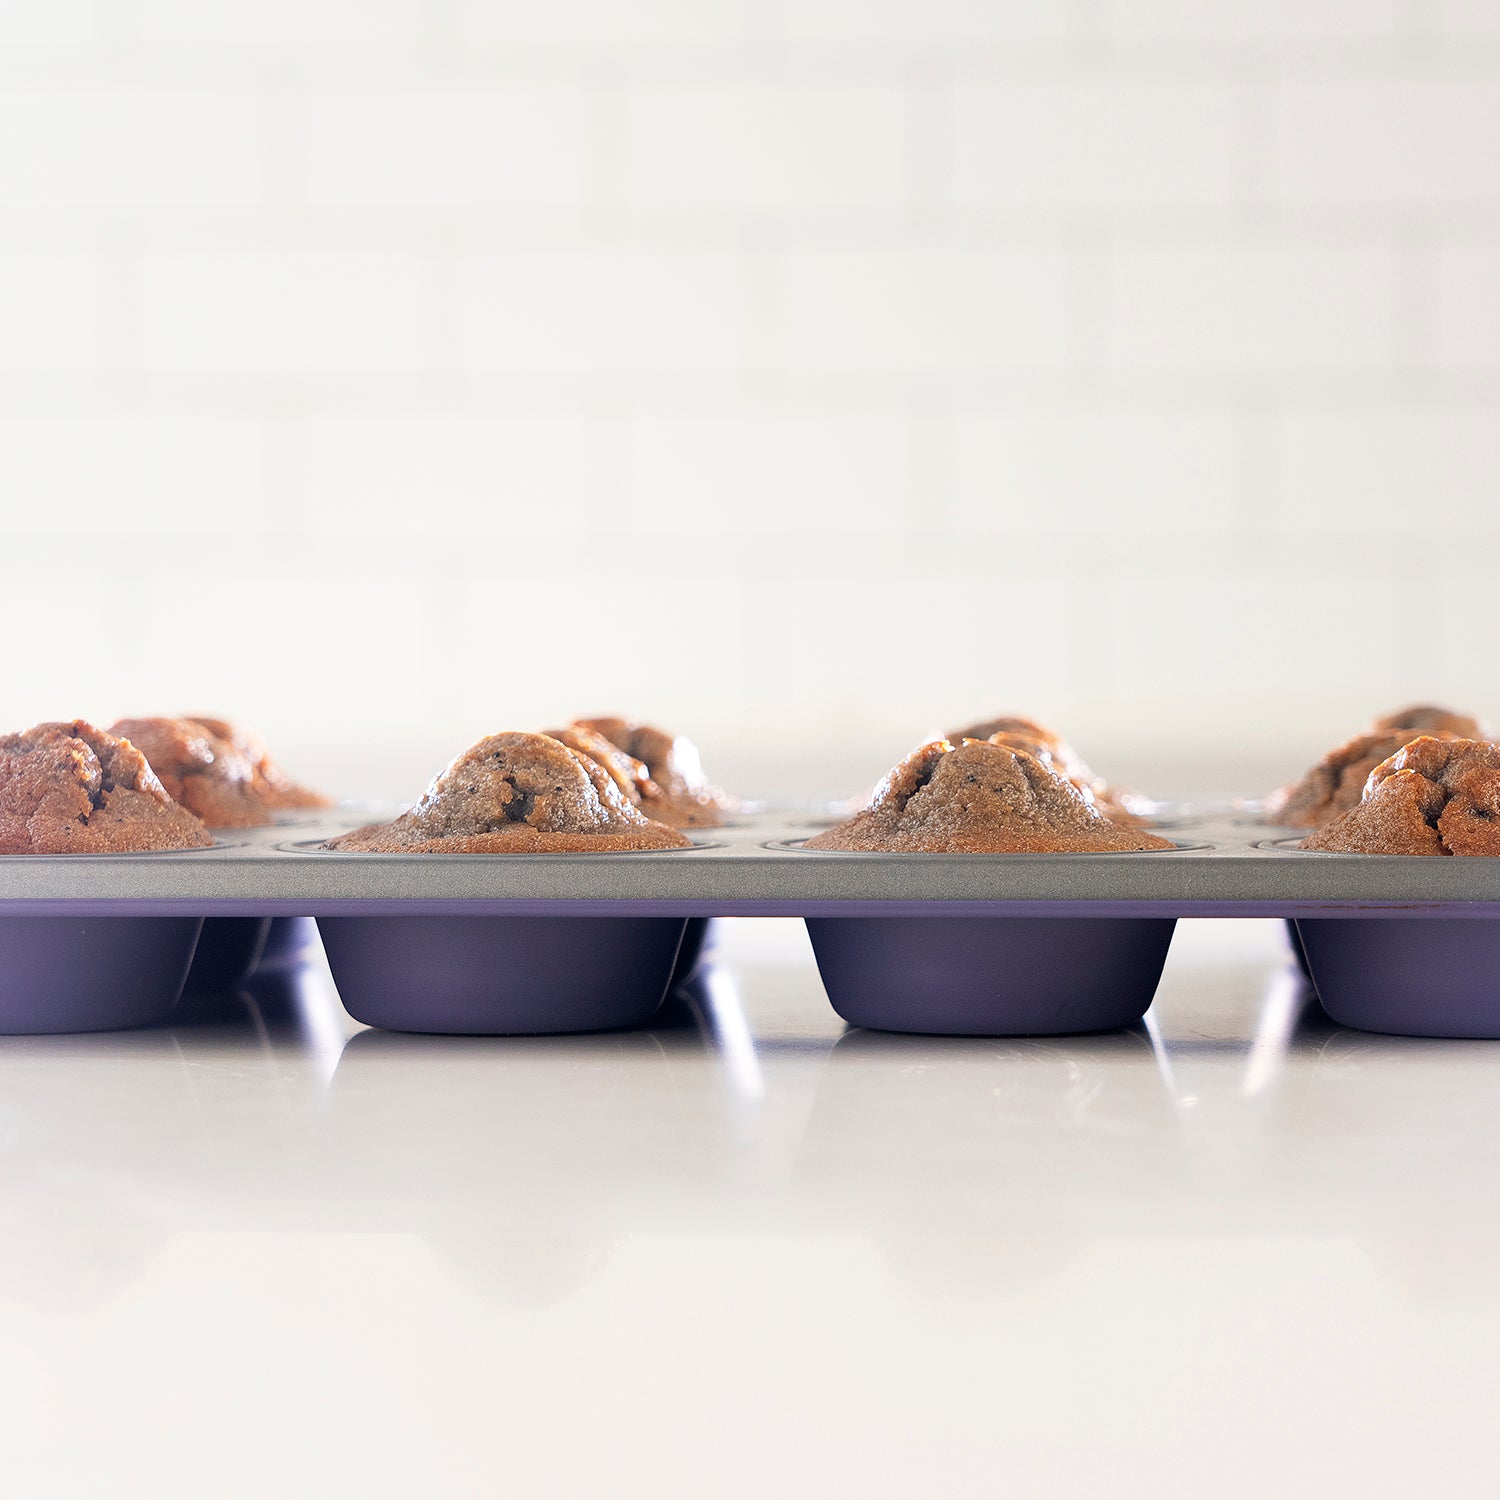 GUARDINI 12 Muffins tray non-stick cake Pan